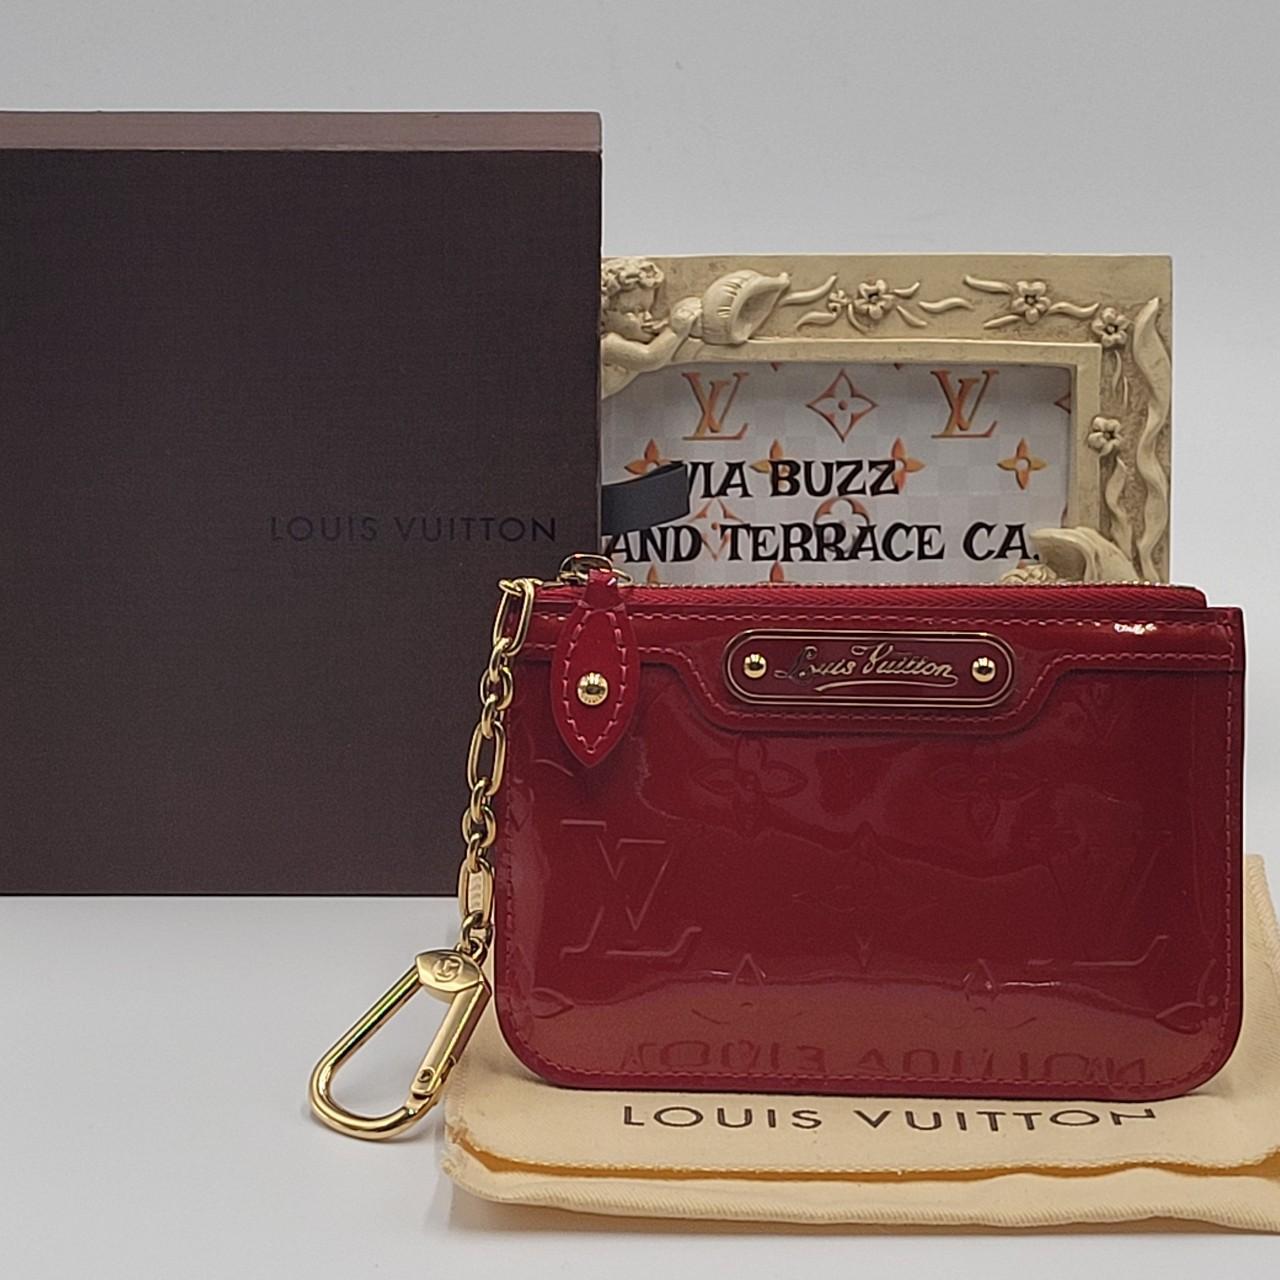 Authentic Louis Vuitton Monogram cosmetic pouch - Depop